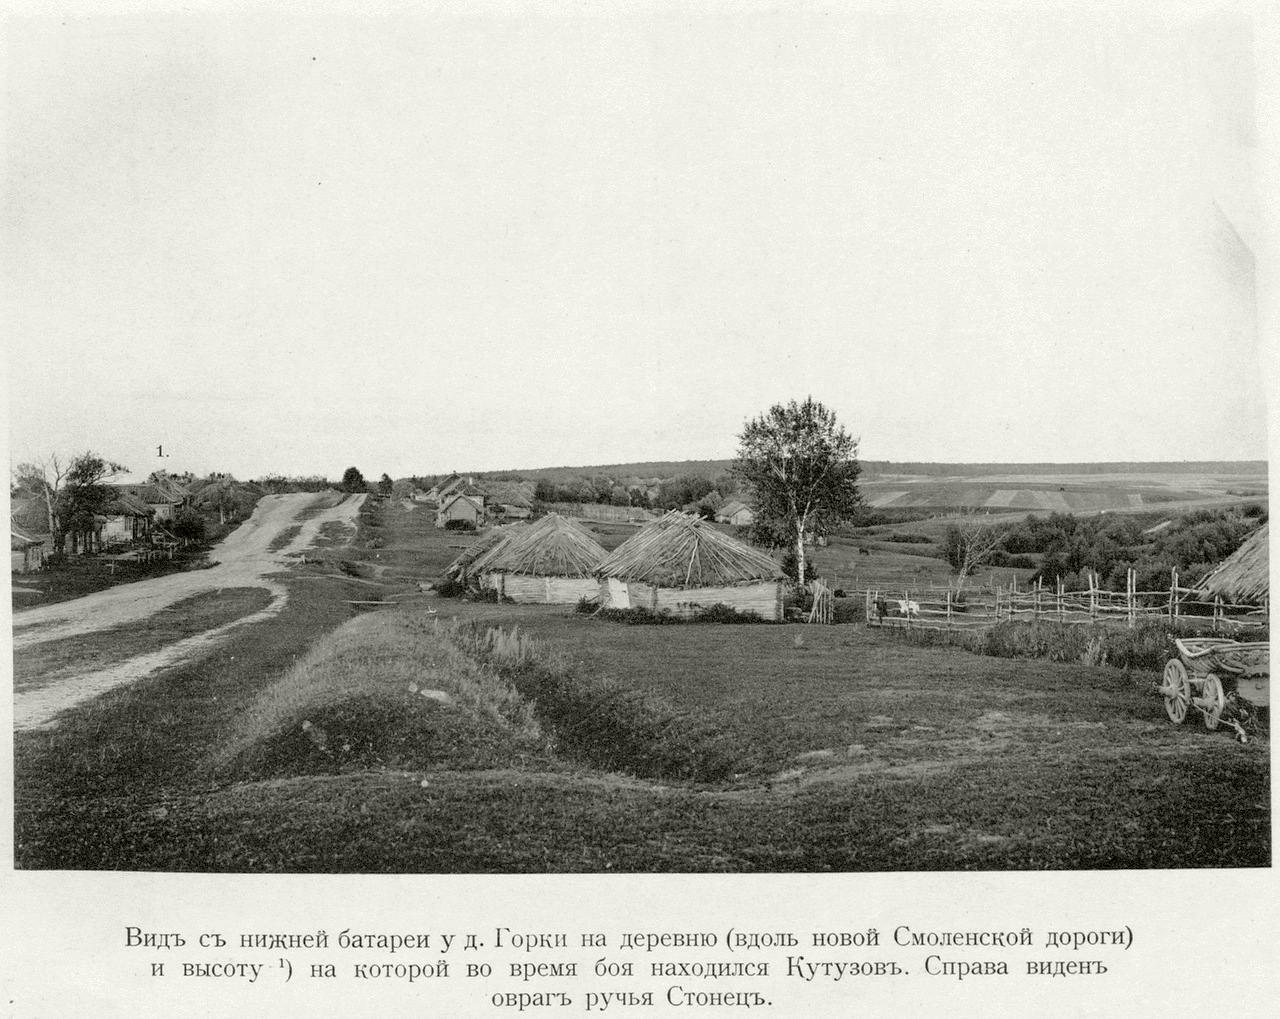 Бородинское поле. 1912 год